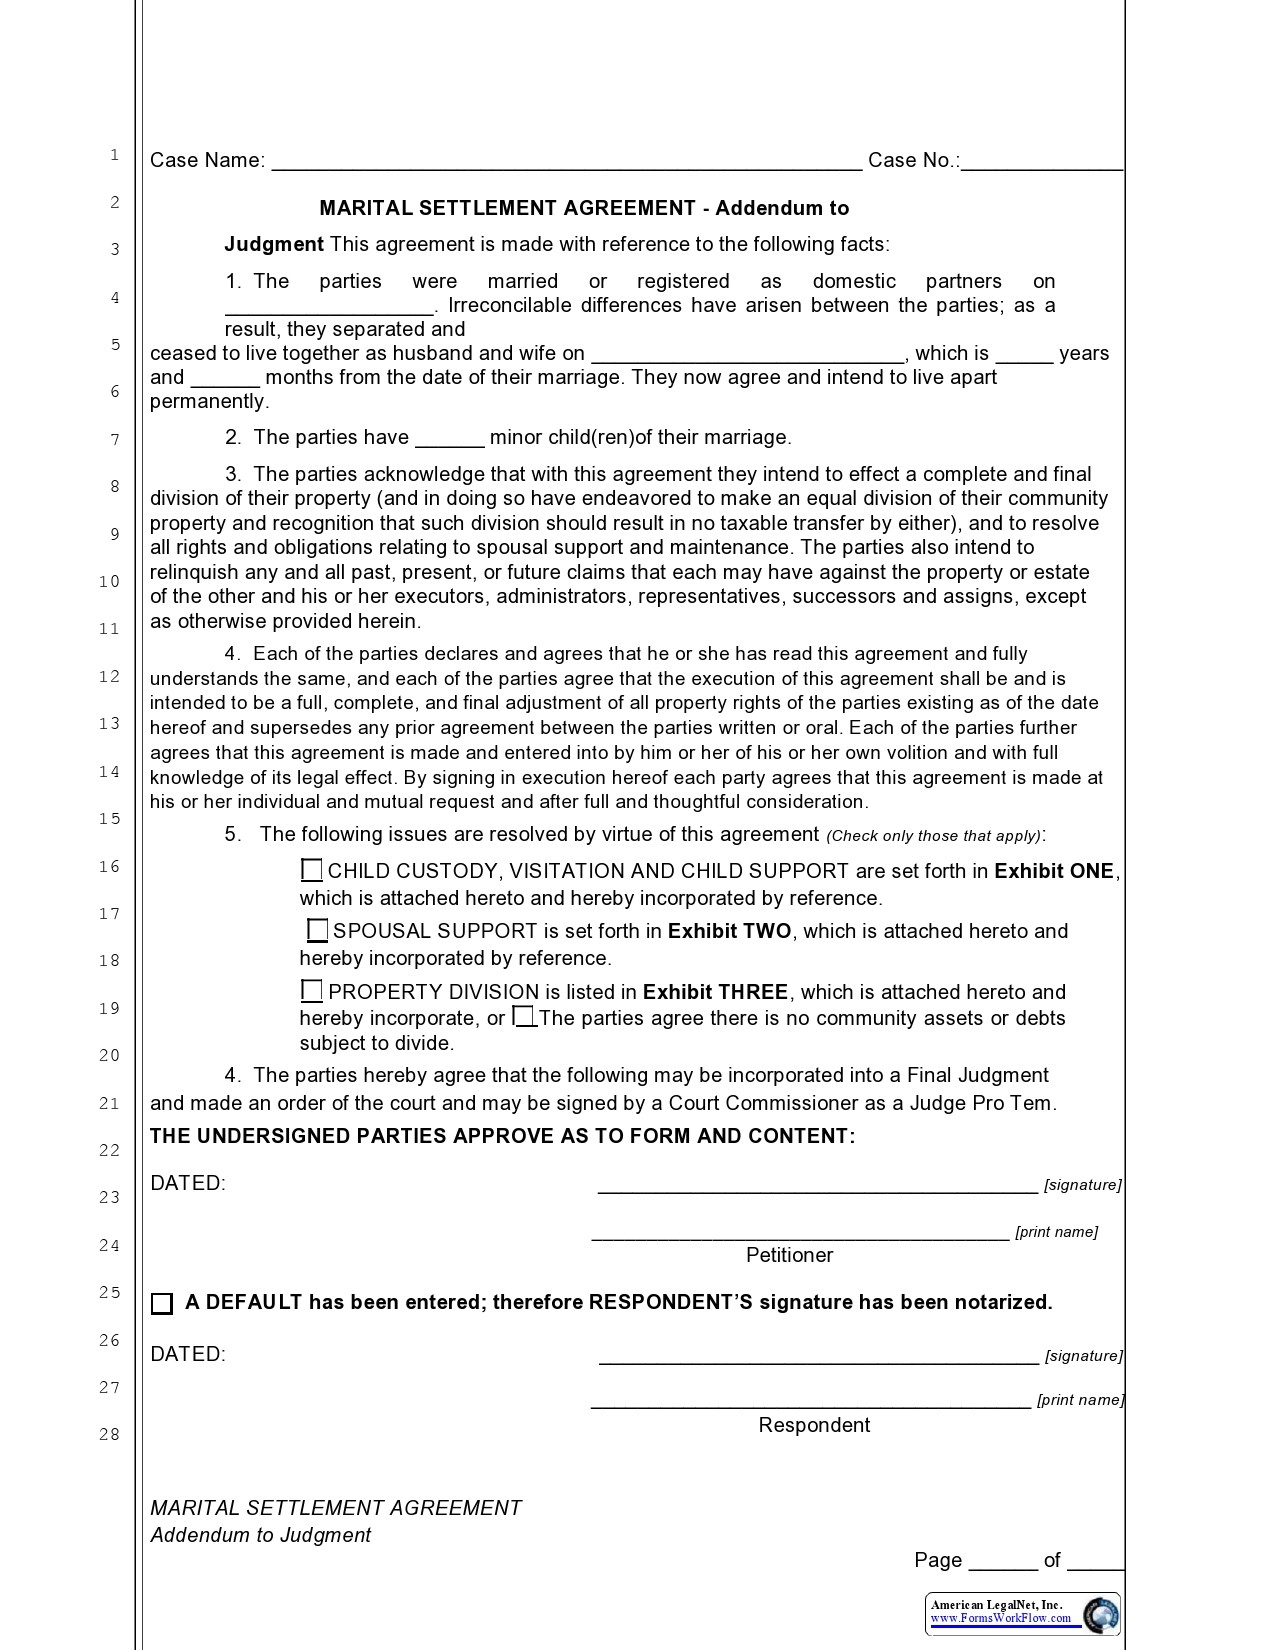 Free marital settlement agreement 12